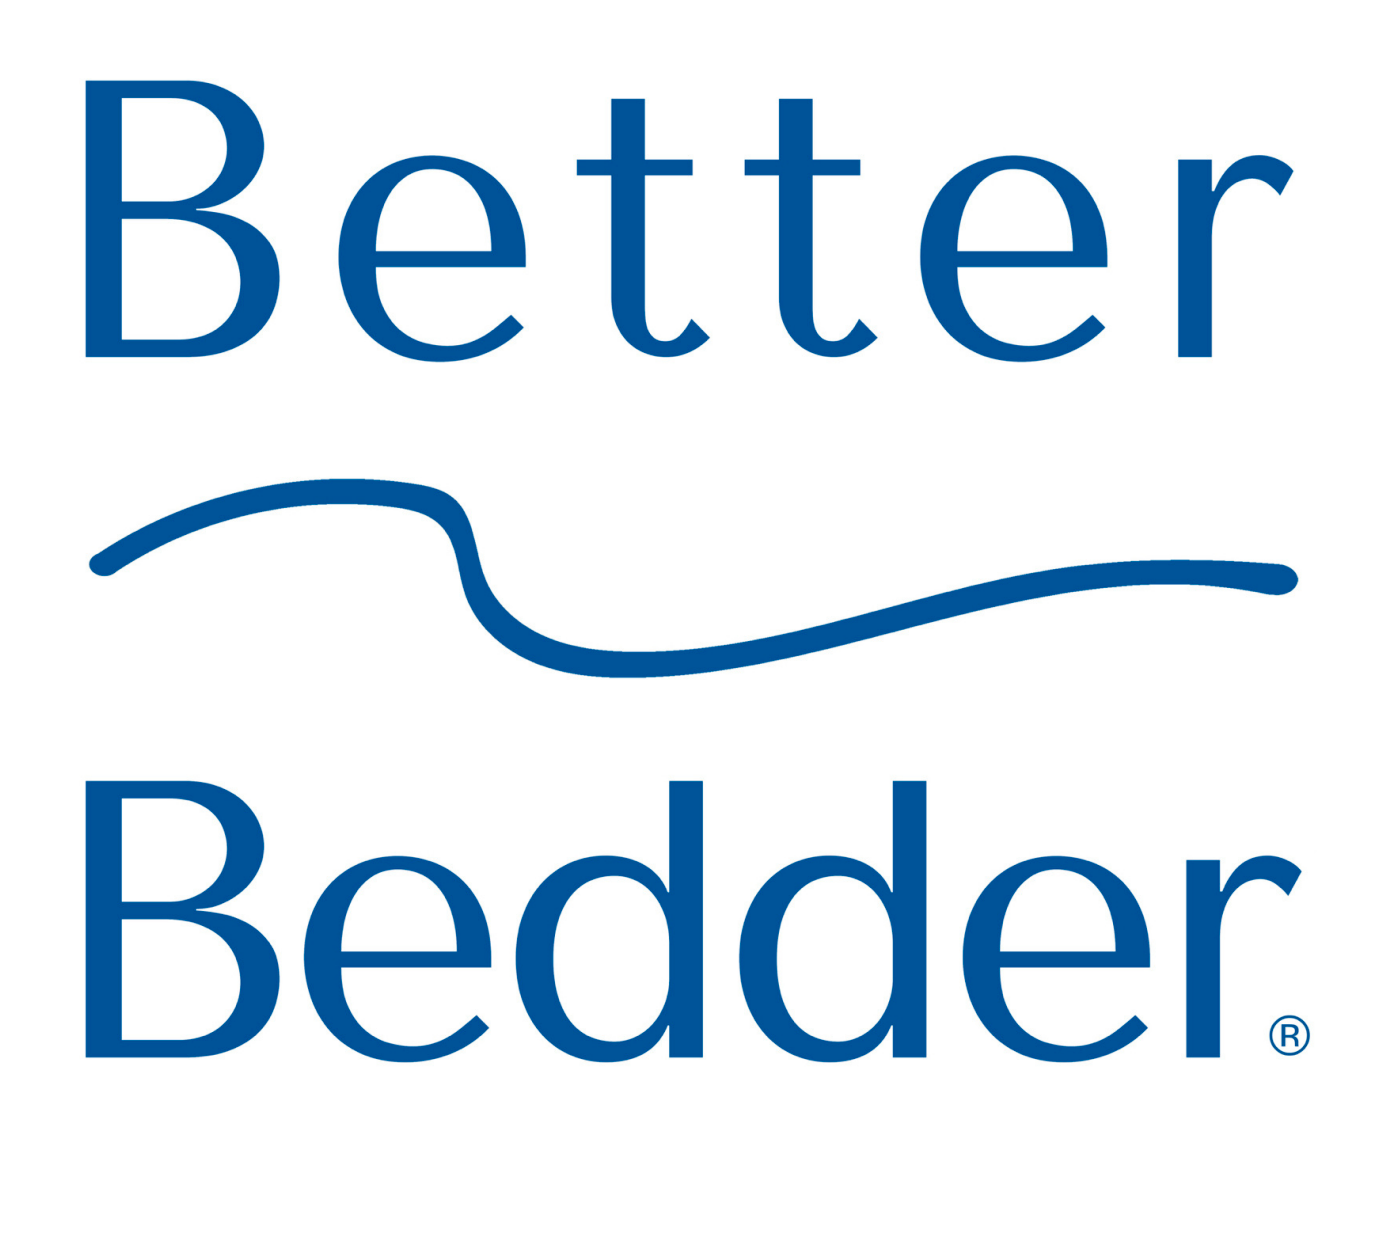 Better Bedder